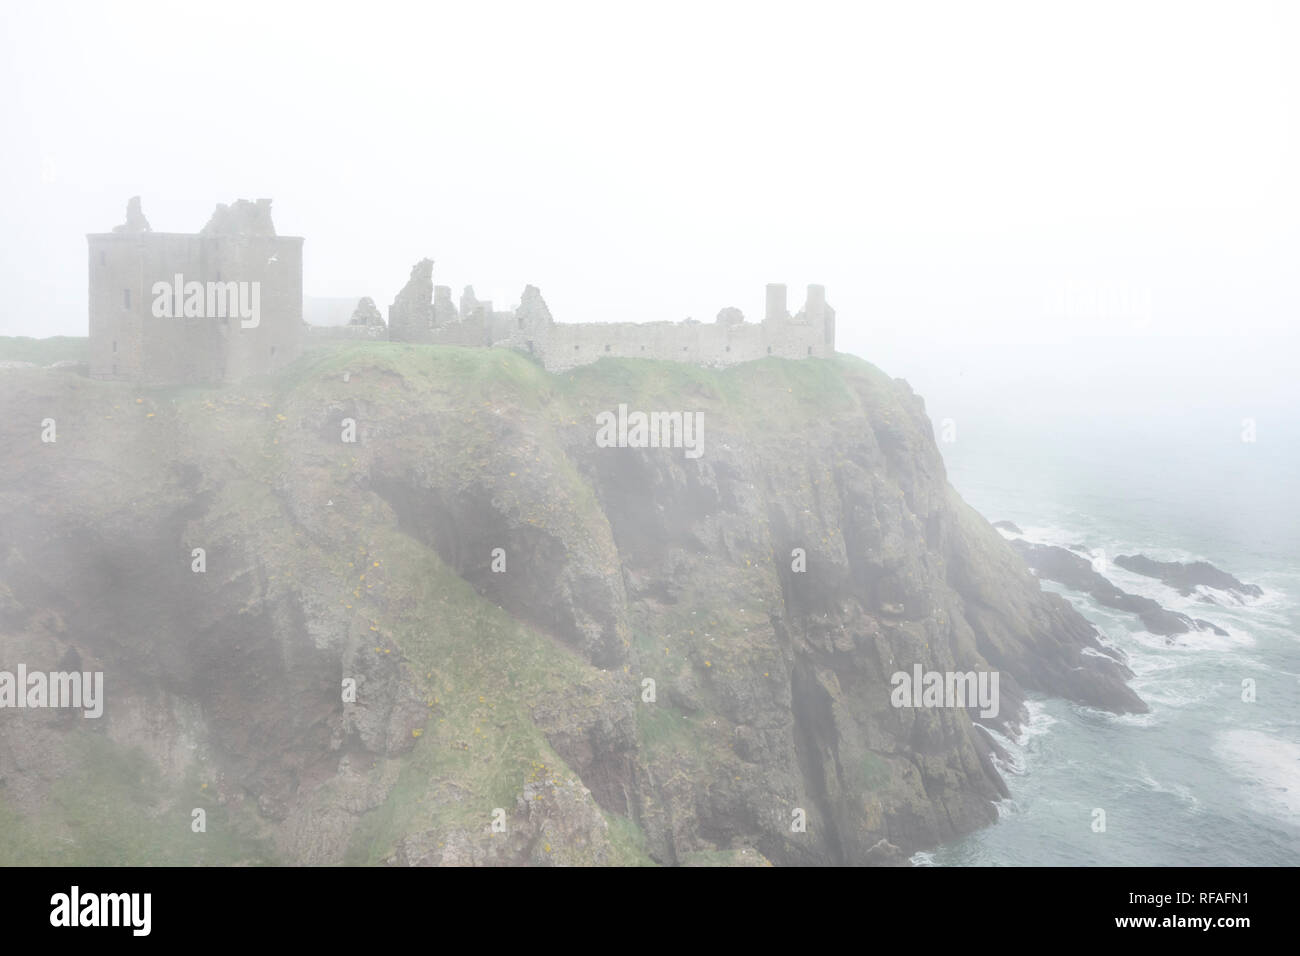 Dunnottar Castle dans un brouillard épais, forteresse médiévale en ruine près de Stonehaven sur falaise le long de la côte de la mer du Nord, dans l'Aberdeenshire, Ecosse, Royaume-Uni Banque D'Images